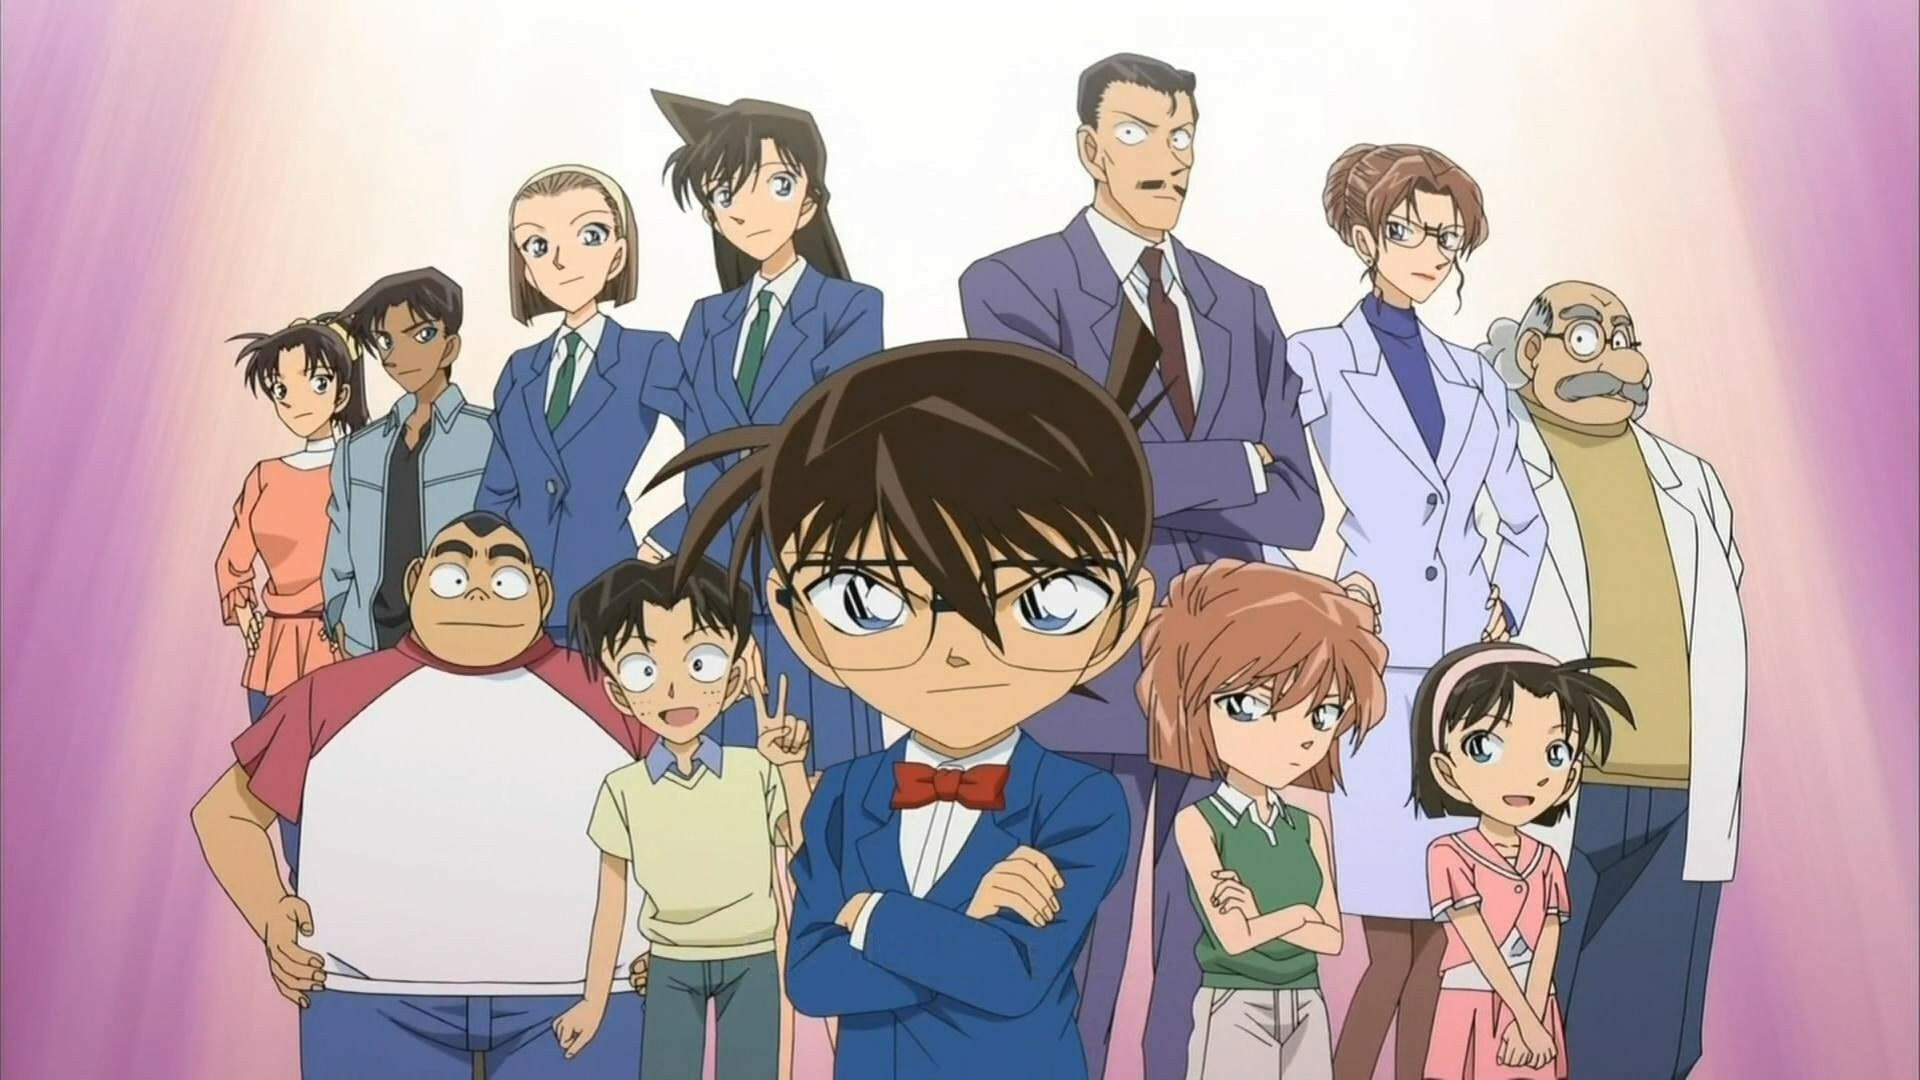 Detective Conan: Shinichi Kudo, Ran Mouri, Kogoro Mouri, Ayumi Yoshida, Mitsuhiko Tsuburaya. 1920x1080 Full HD Wallpaper.